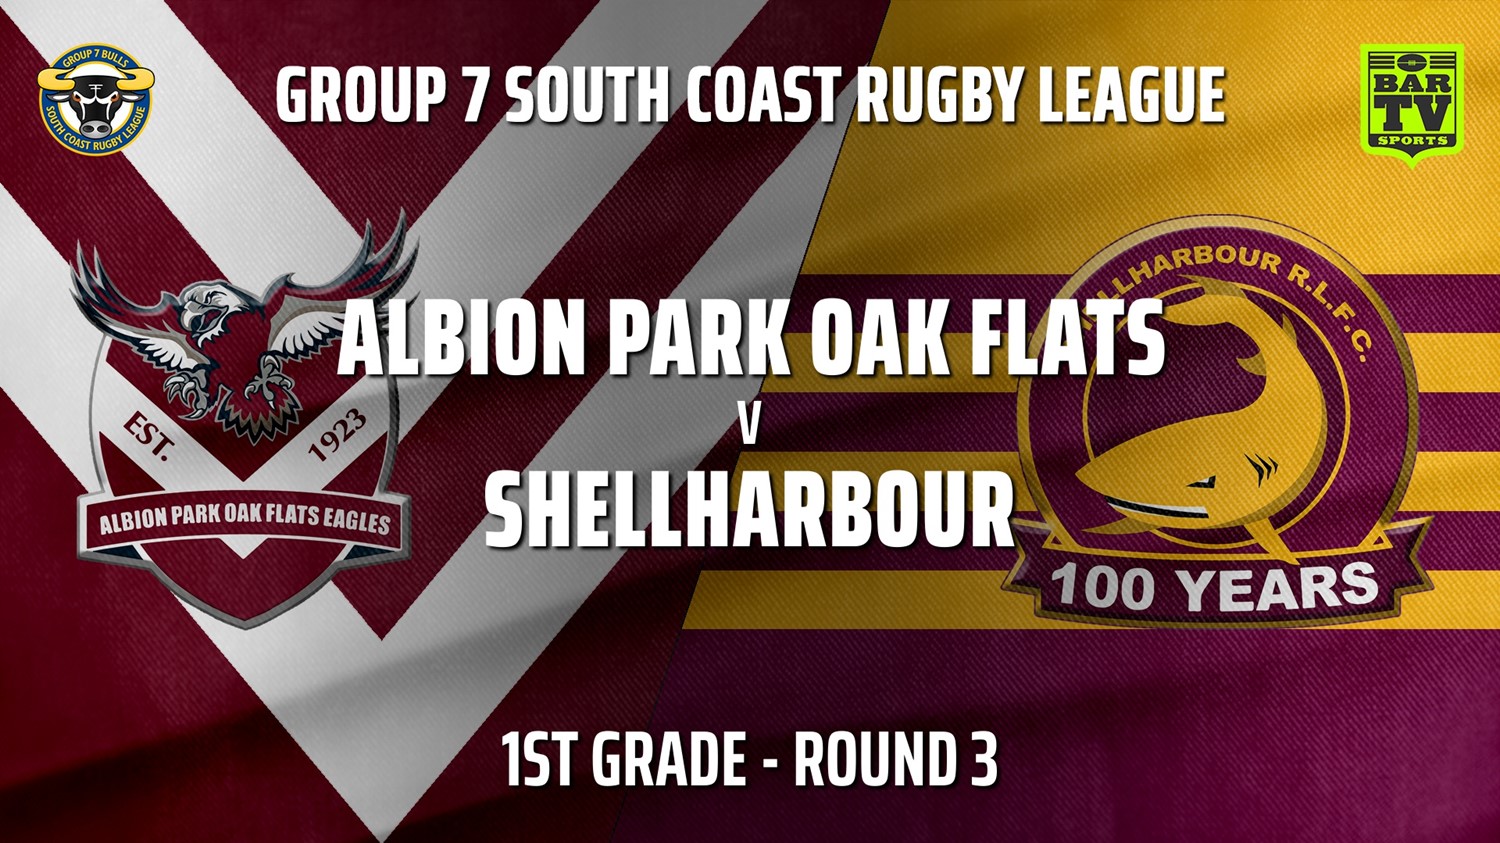 210502-Group 7 RL Round 3 - 1st Grade - Albion Park Oak Flats v Shellharbour Sharks Slate Image